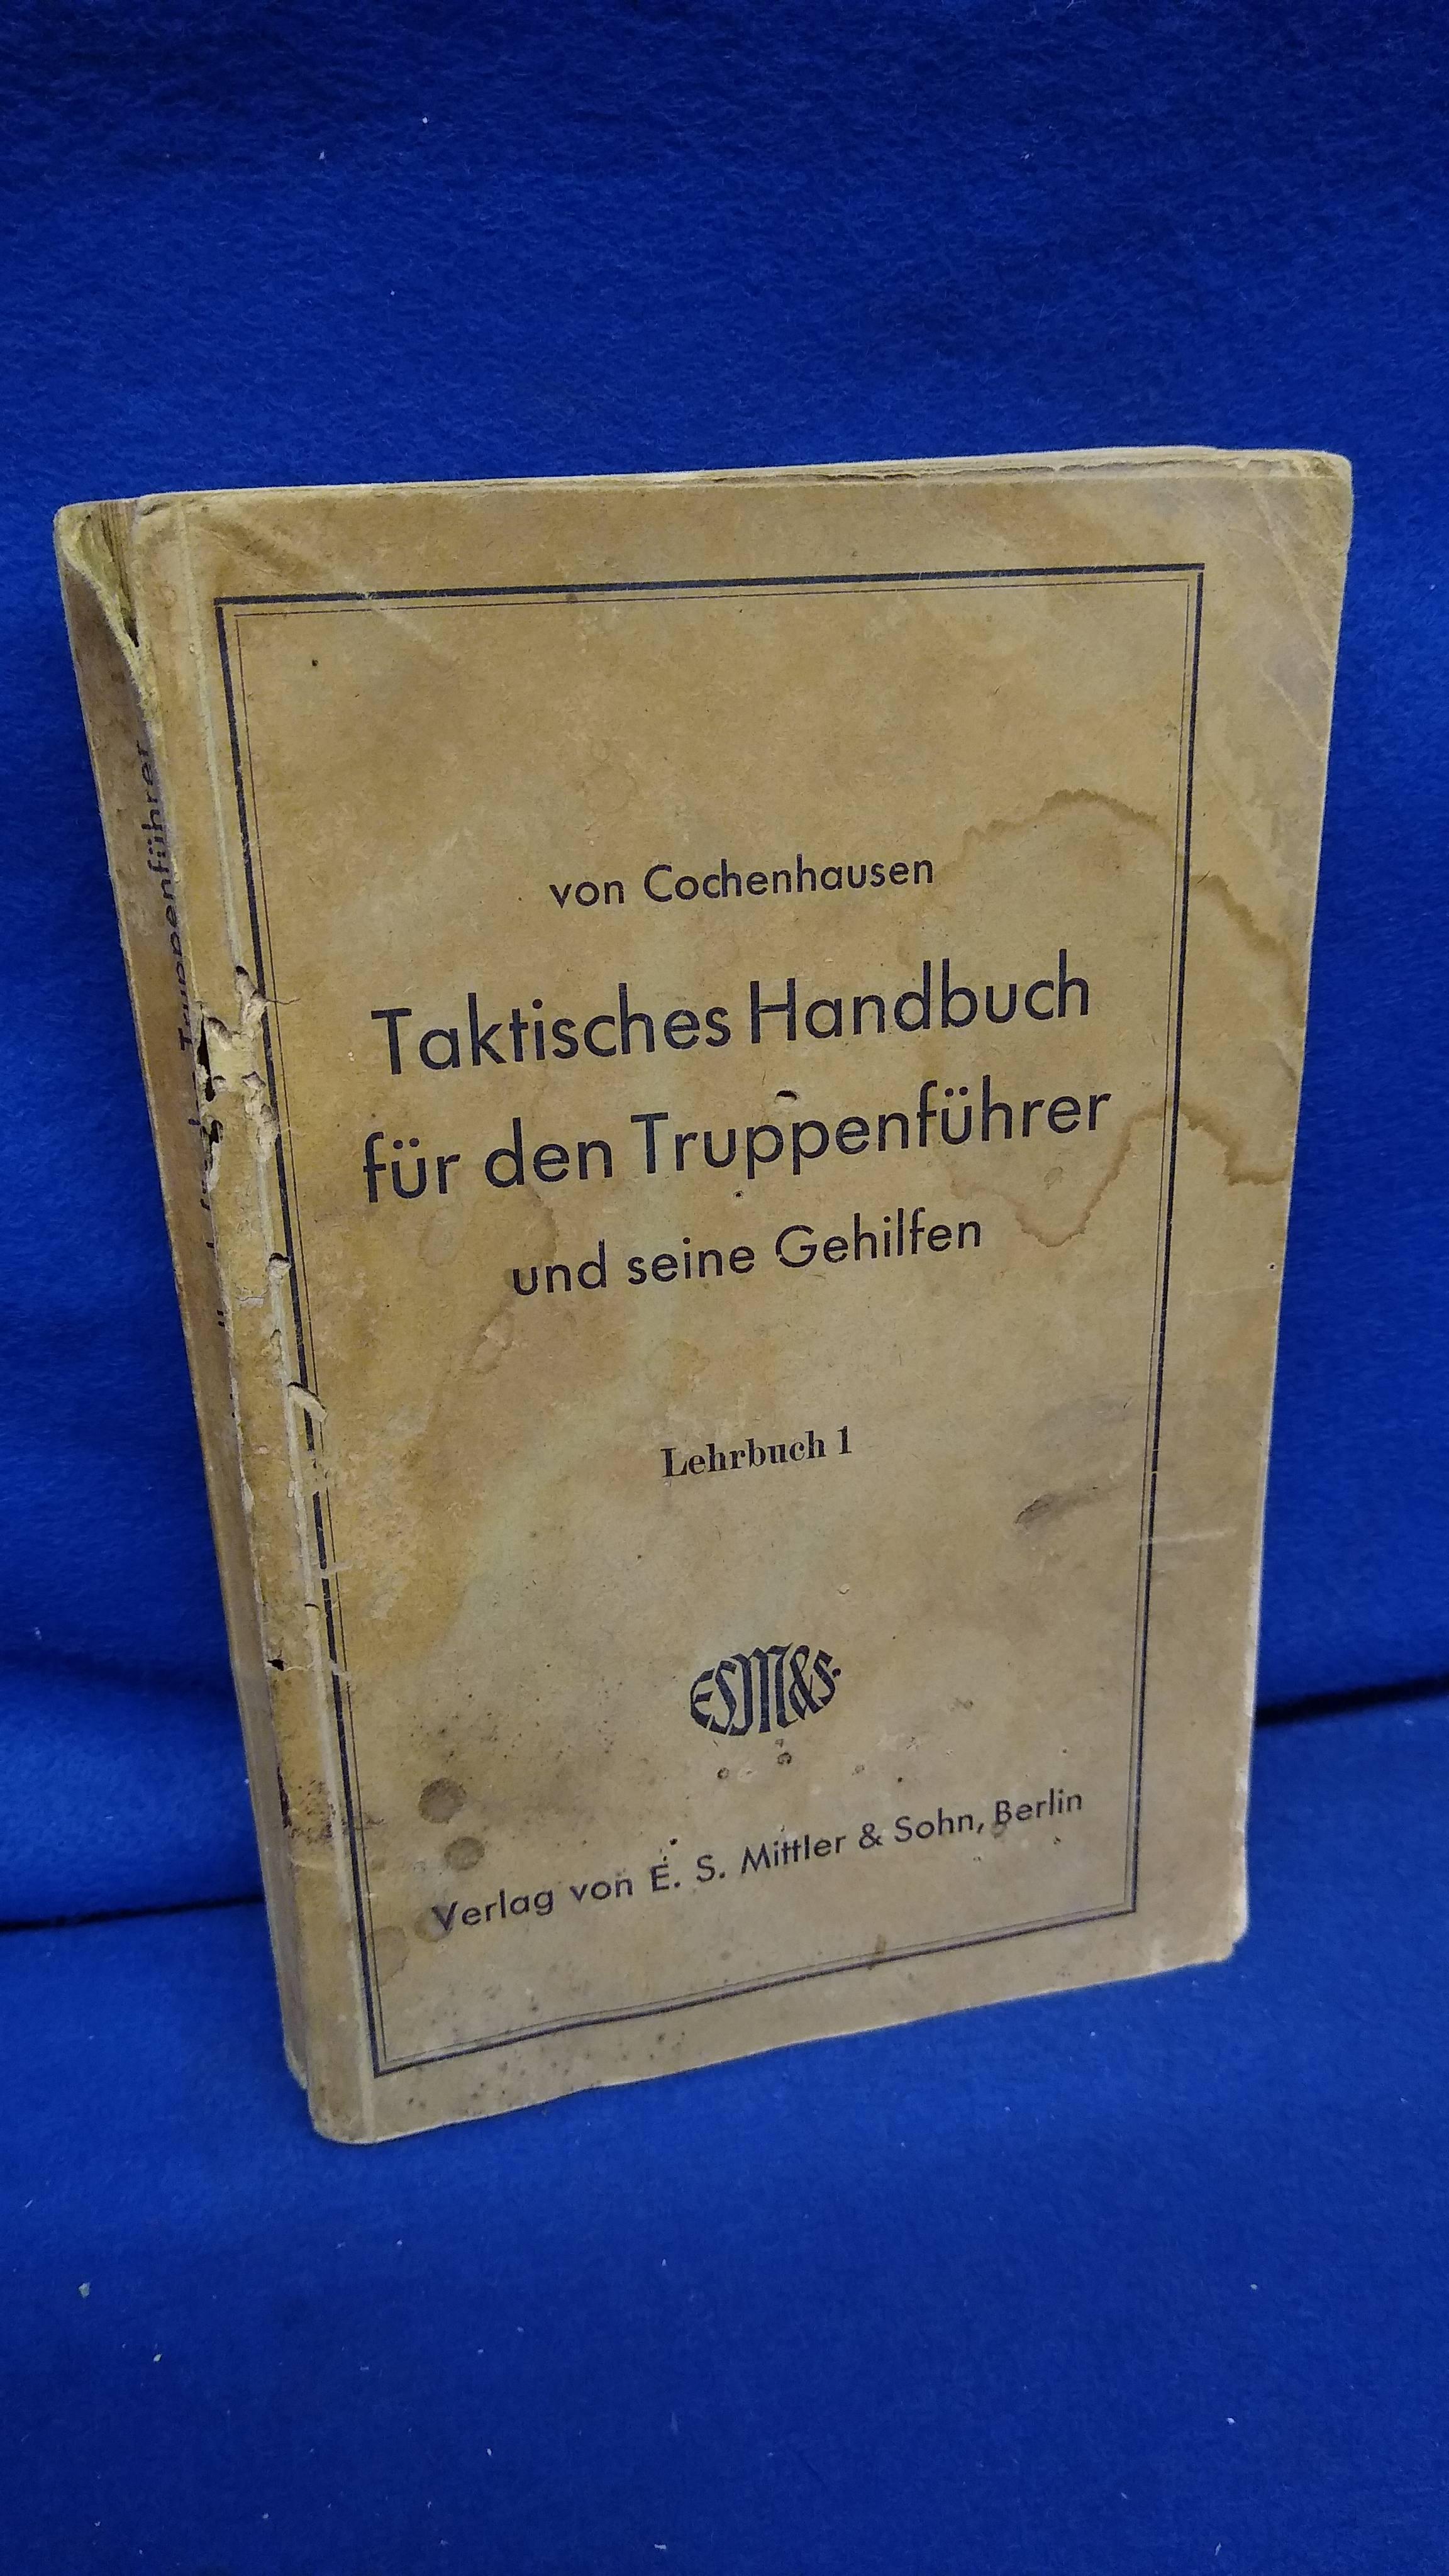 Taktisches Handbuch für den Truppenführer und seine Gehilfen. Lehrbuch 1. Seltene Kriegs-Ausgabe von 1940 mit den eingearbeiteten Kriegserfahrungen.